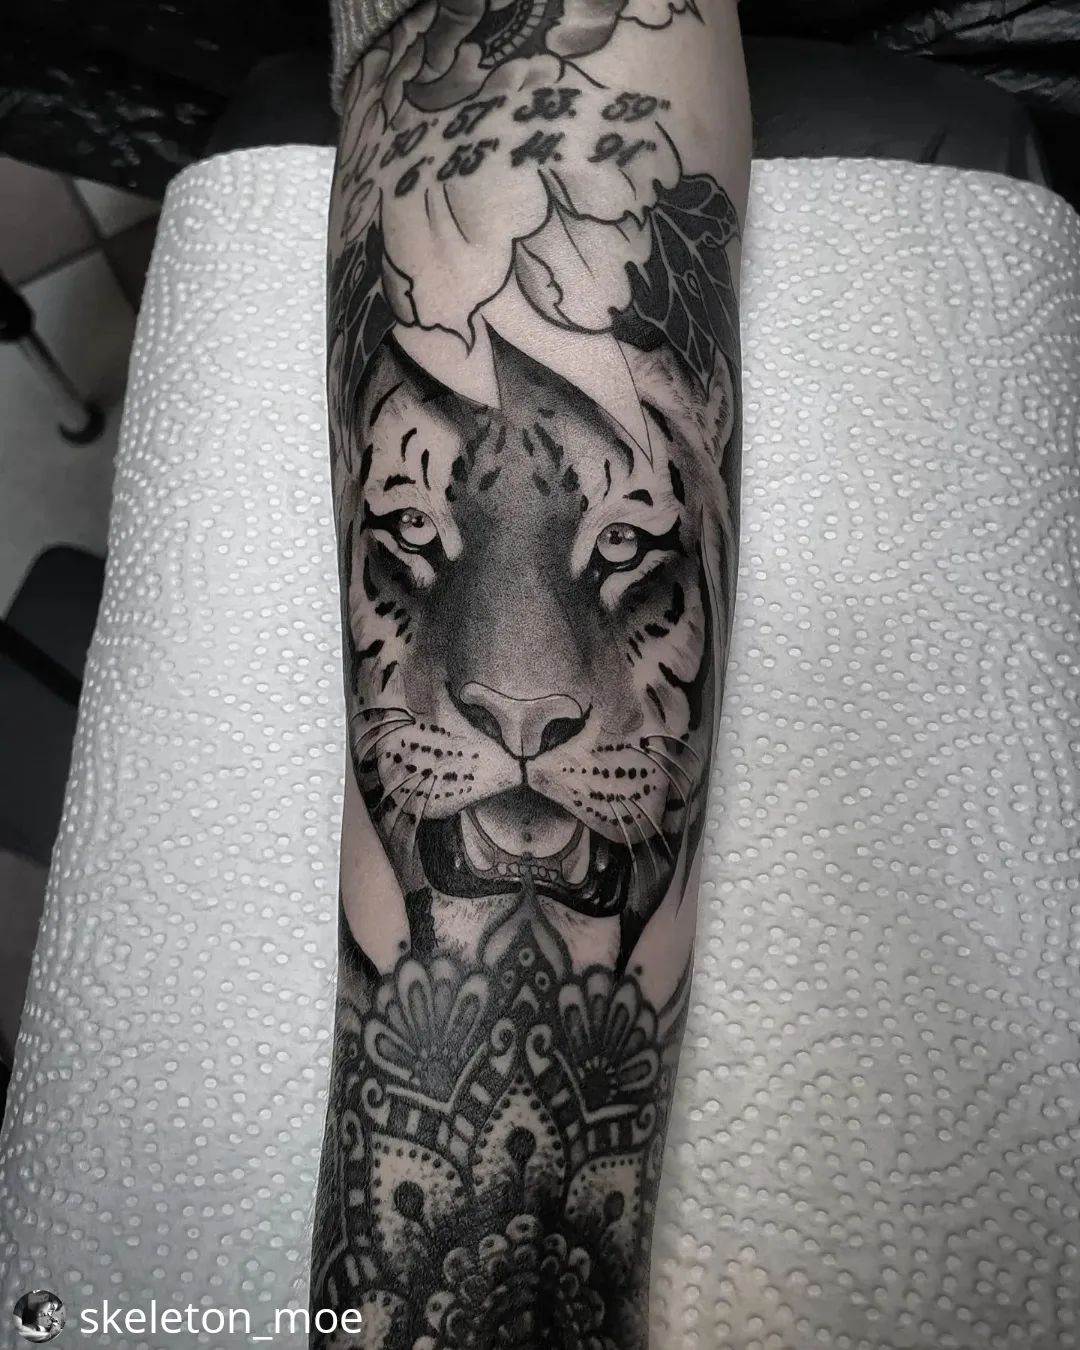 Neu von @skeleton_moe
• • • • • •
Tiger for @_ang.elina :)
.
.
.
.
#tattoo #ink